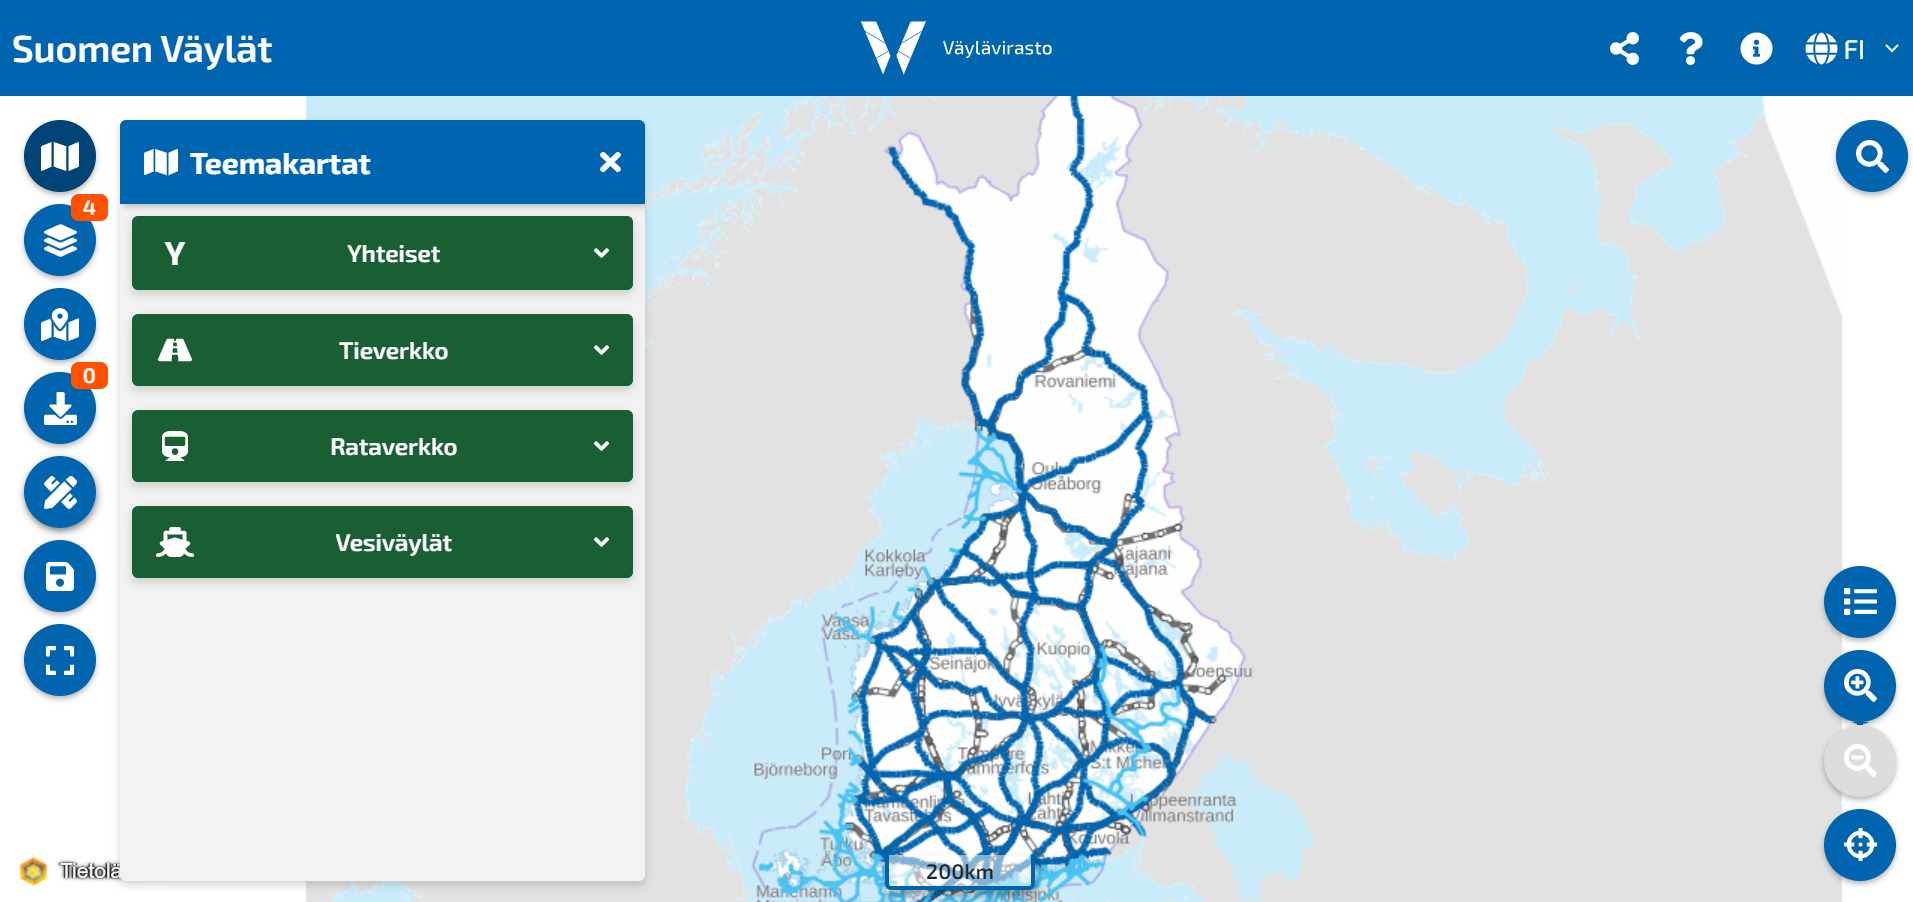 Kuvituskuva Suomen Väylät- palvelusta, jossa visualisoidaan teemakarttojen sijainti palvelussa. Taustalla näkyy Suomen kartta.